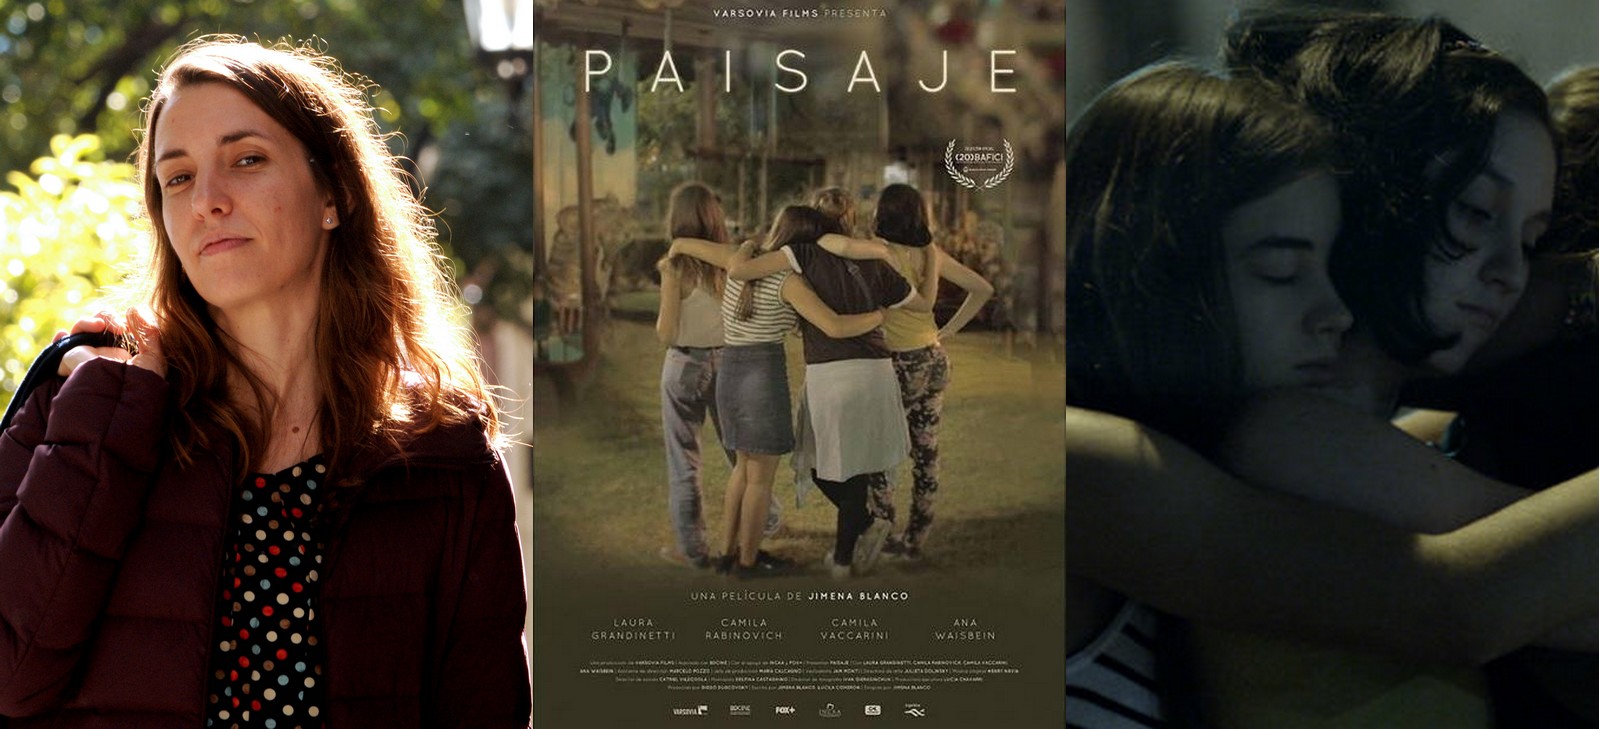 Photo de la réalisatrice argentine Jimena Blanco, affiche et photo de son premier film Paisaje